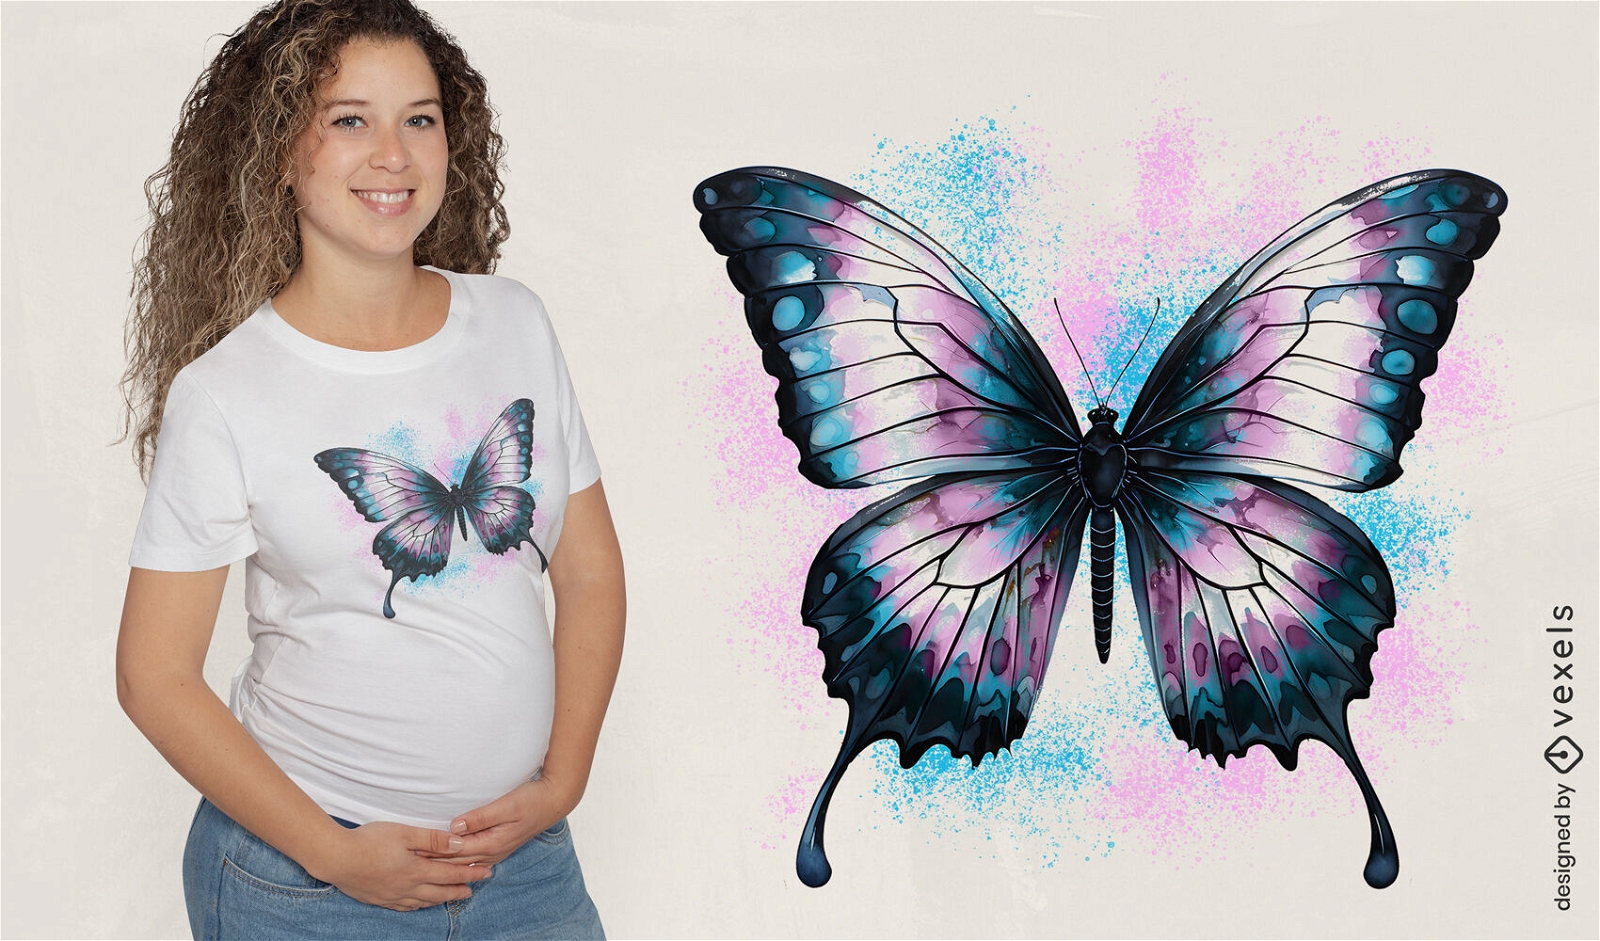 Diseño de camiseta con bandera trans de mariposa.